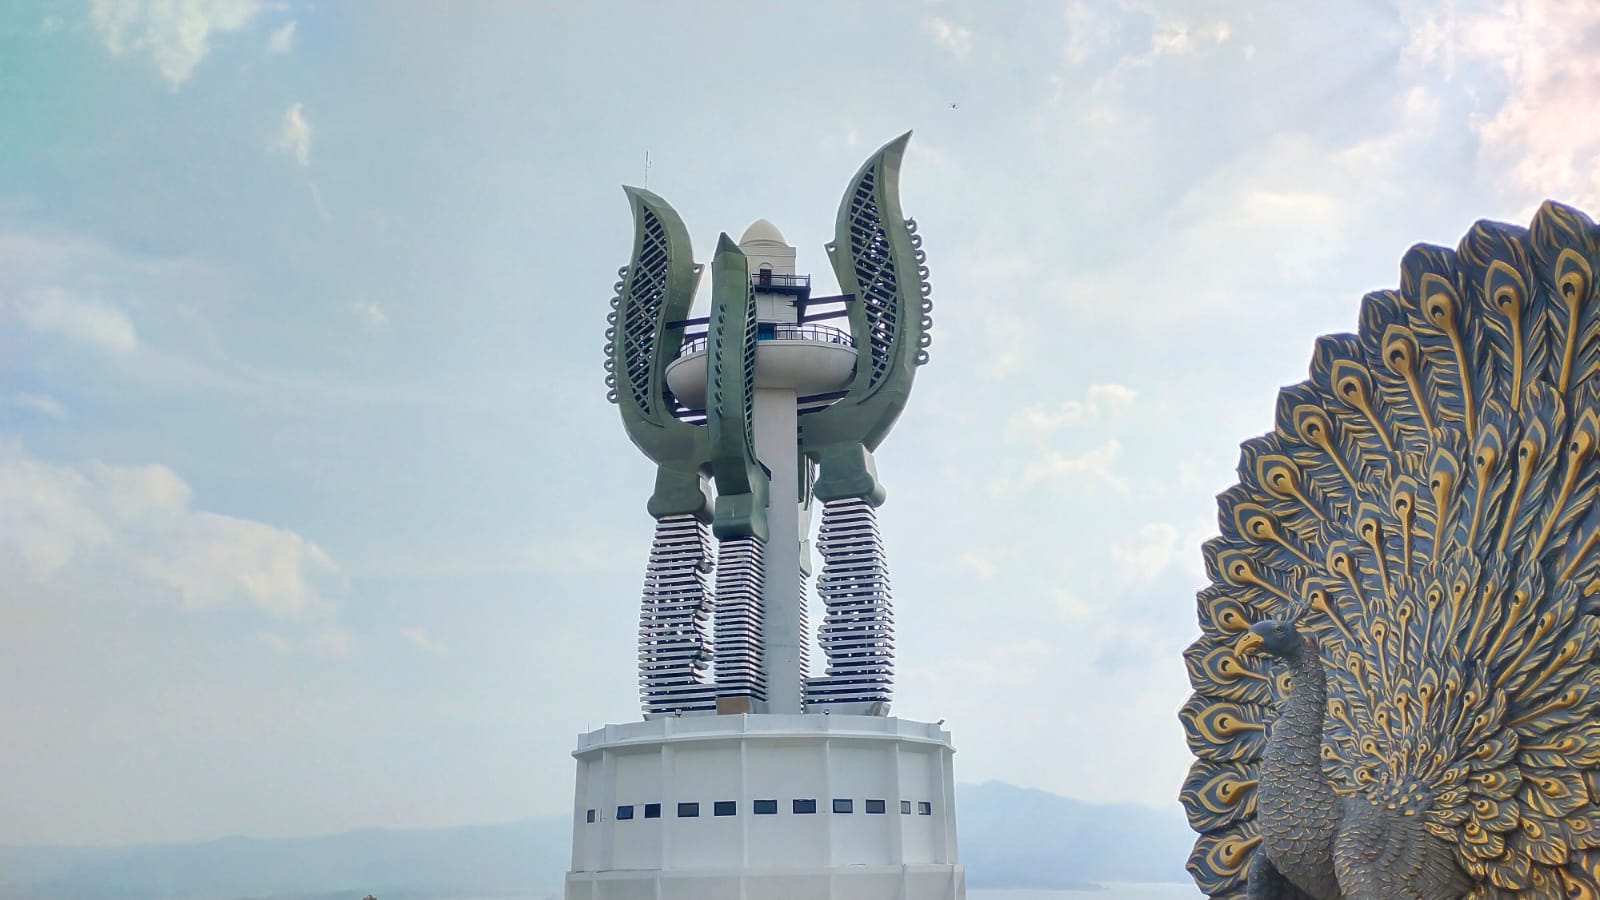 Resmikan Menara Kujang Sepasang di Jatigede, Ridwan Kamil Ceritakan Kisah Pendiriannya